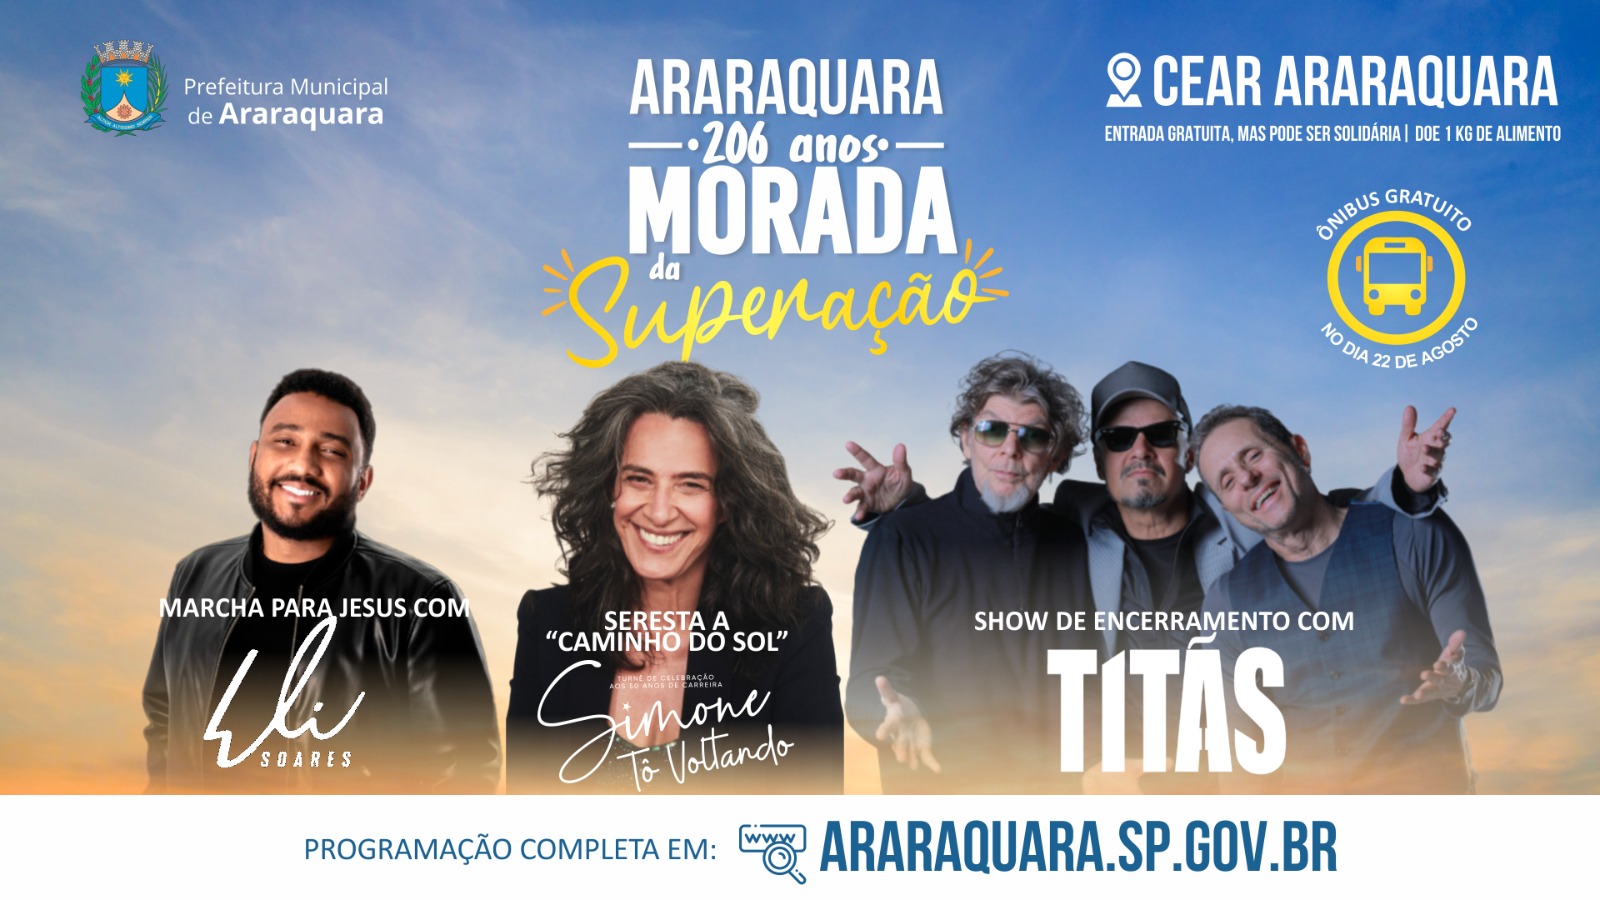 Titãs e Simone confirmados no aniversário dos 206 anos de Araraquara